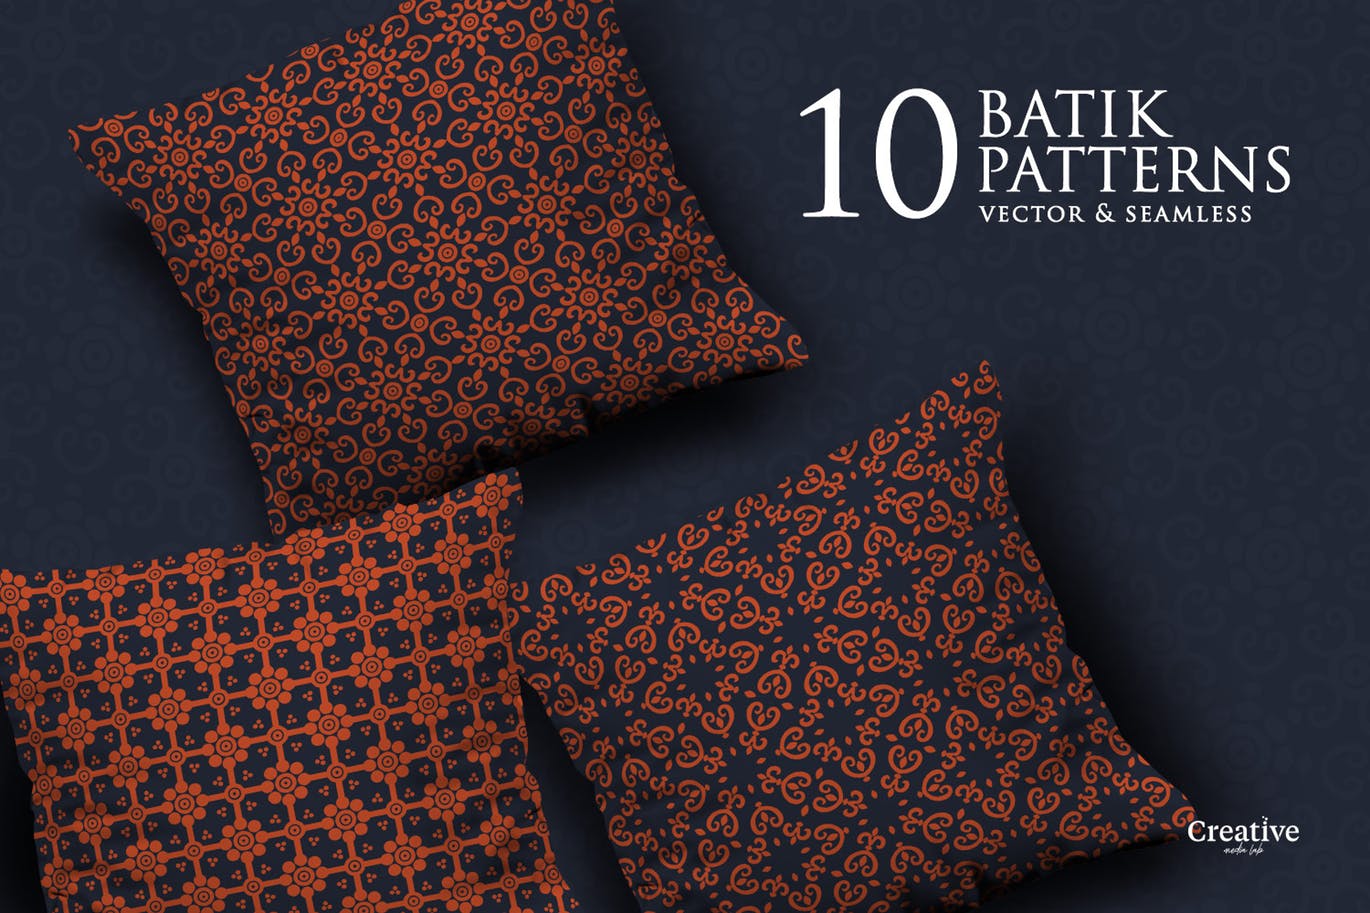 蜡染无缝印花图案背景设计素材包 Batik Seamless pattern set插图